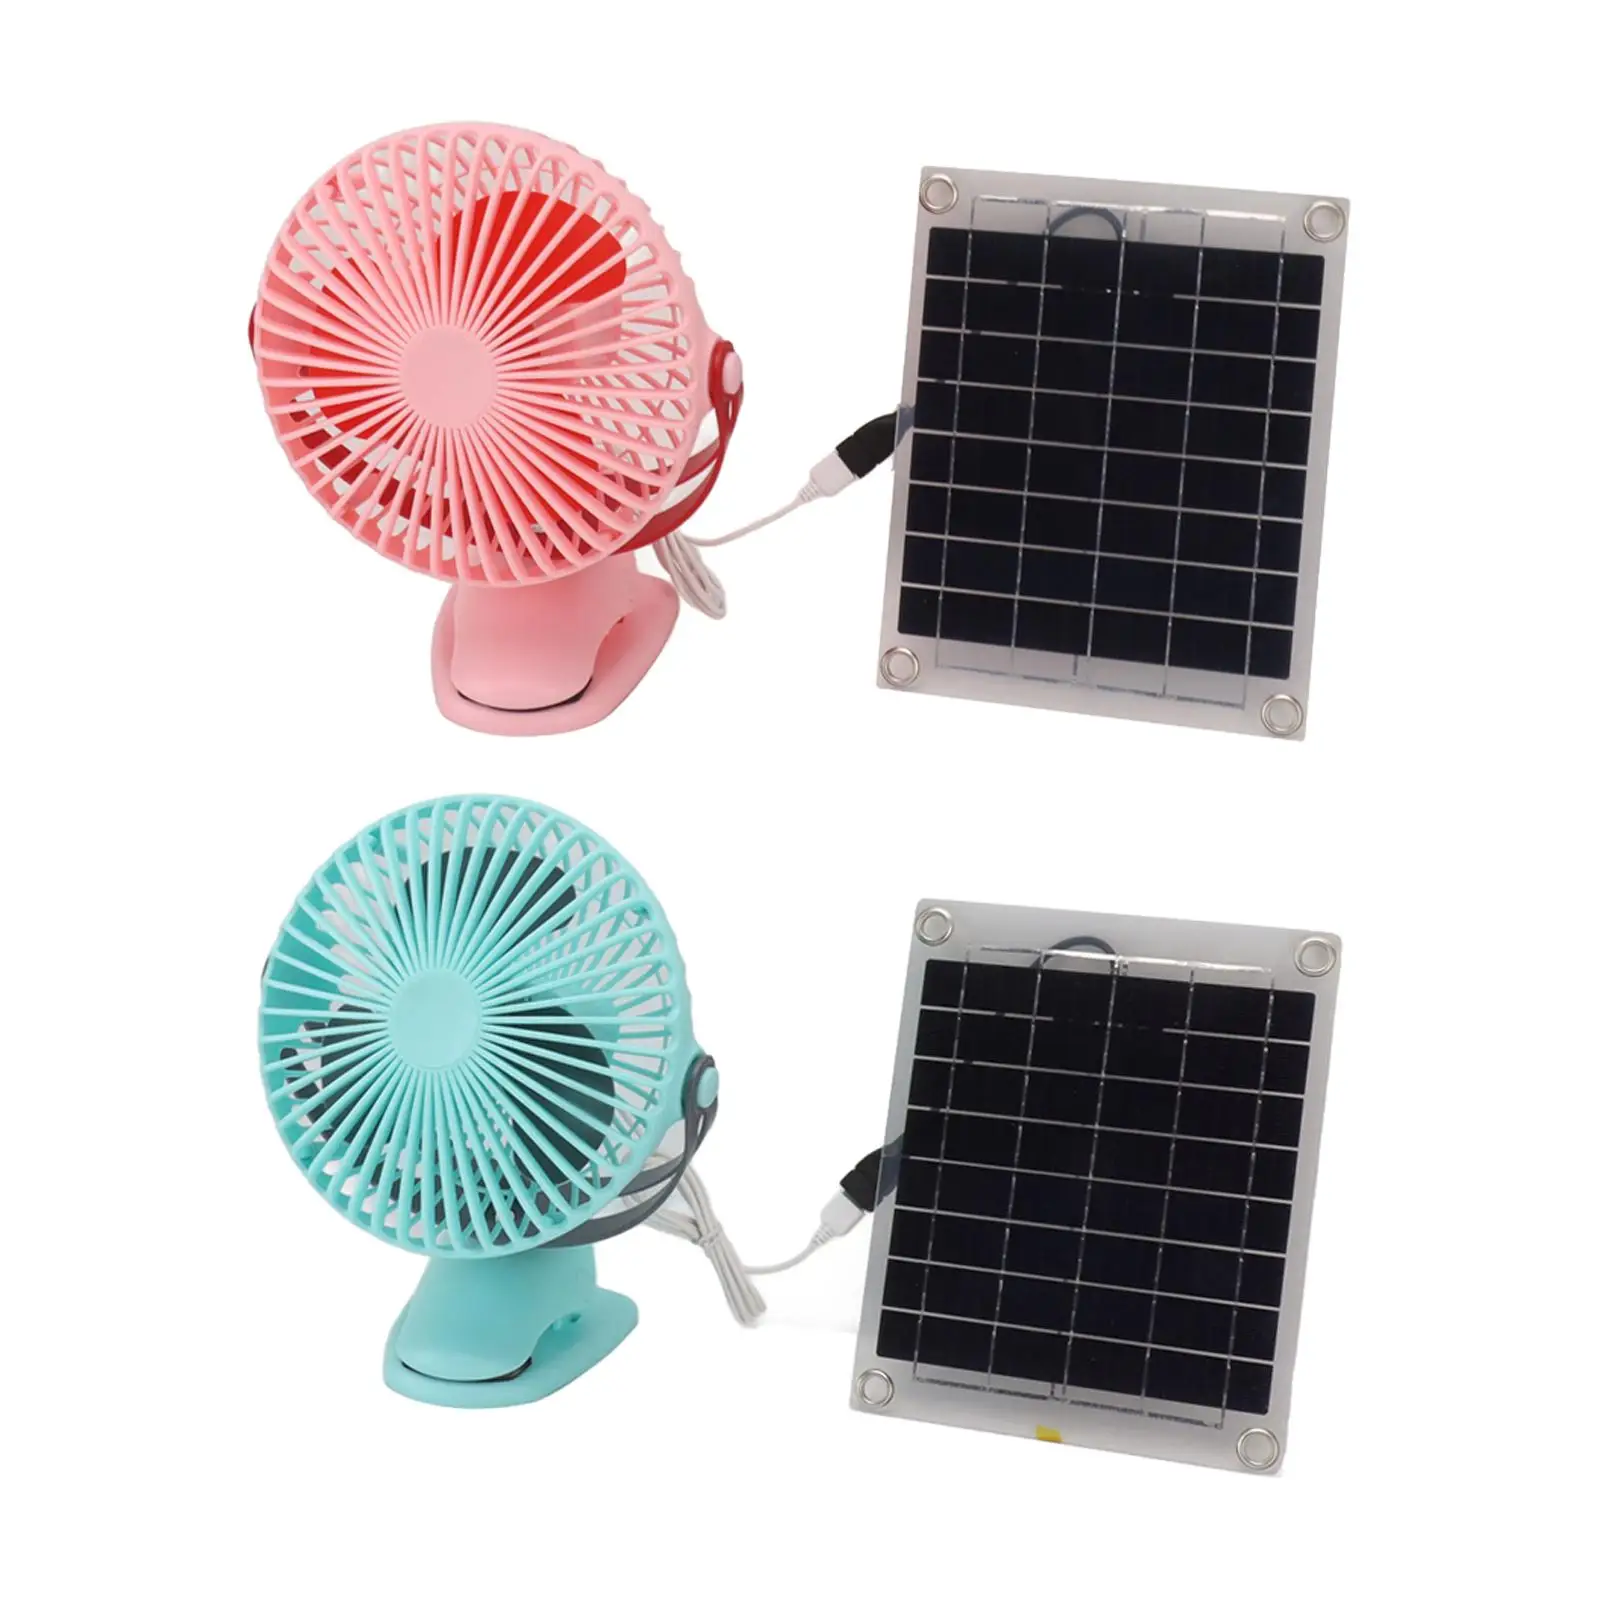 Clip on Fan Camping Fan with Solar Panel Portable Solar Powered Fan Personal Desk Fan for Tent Dorm Outside Fishing Household